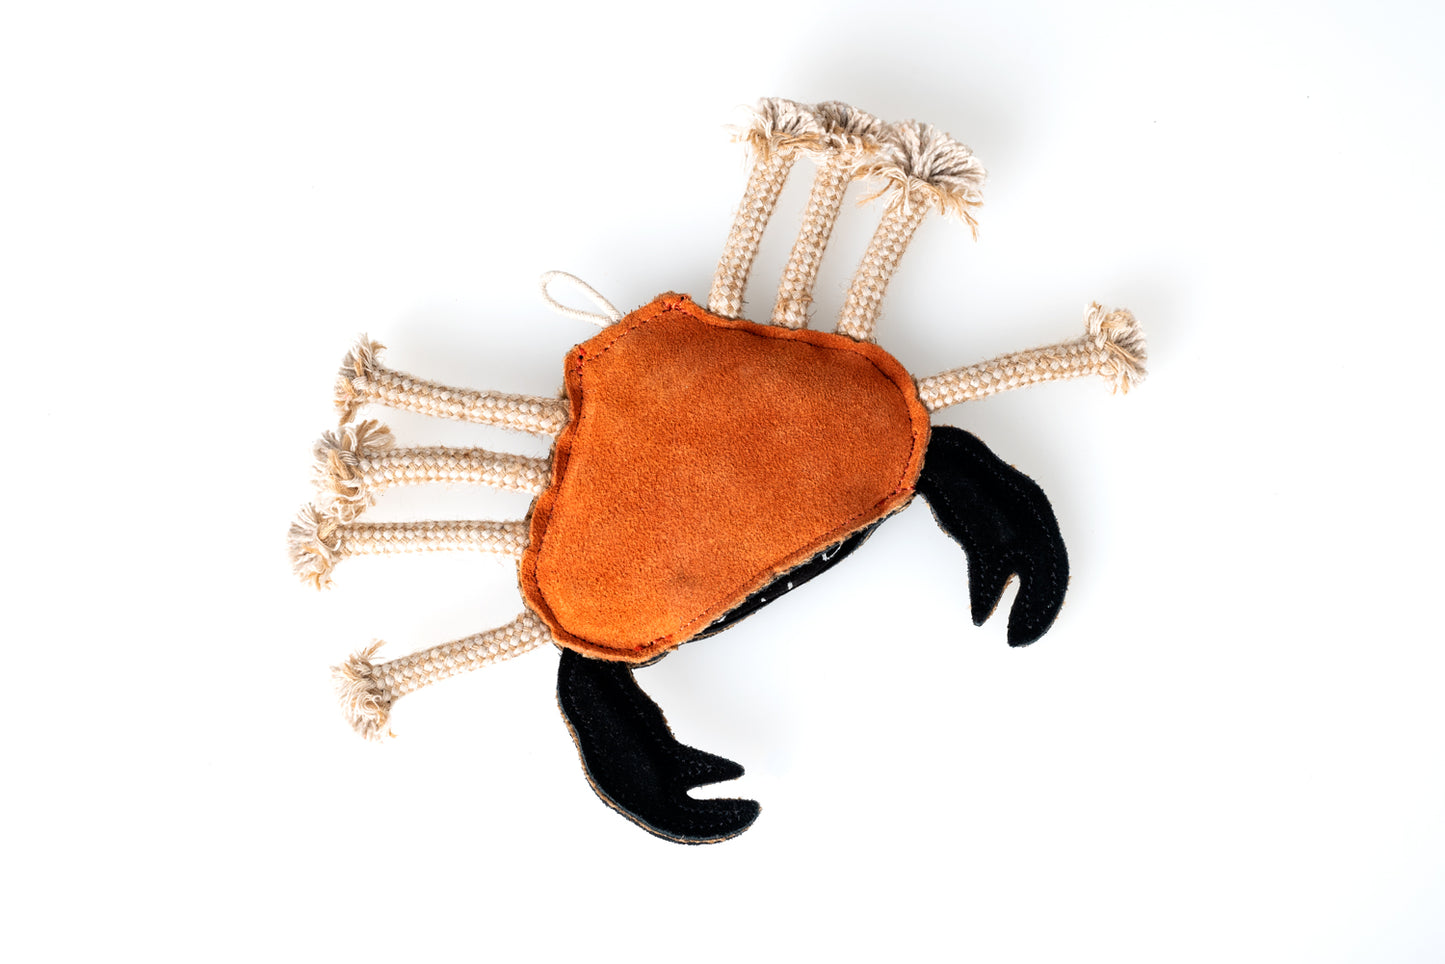 Carlos The Crab - Eco Friendly Dog Toy